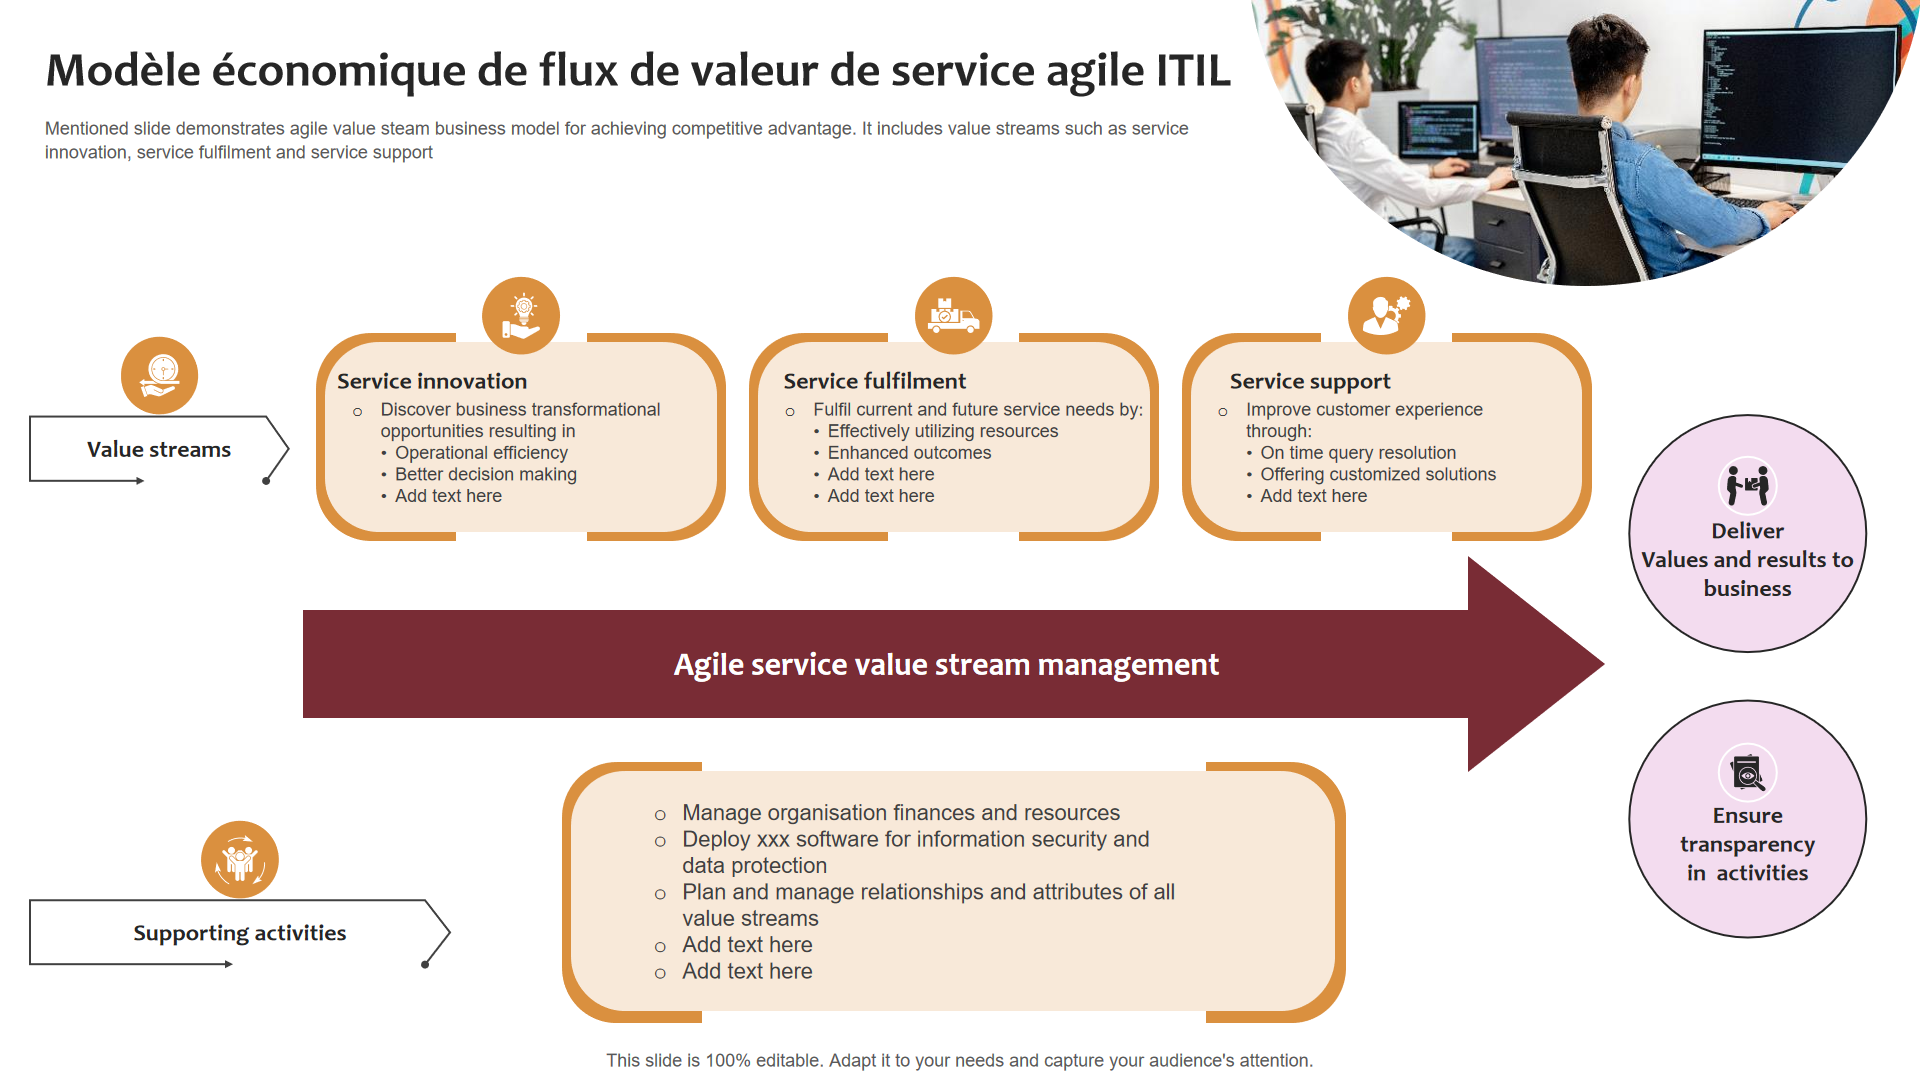 Modèle économique de flux de valeur de service agile ITIL